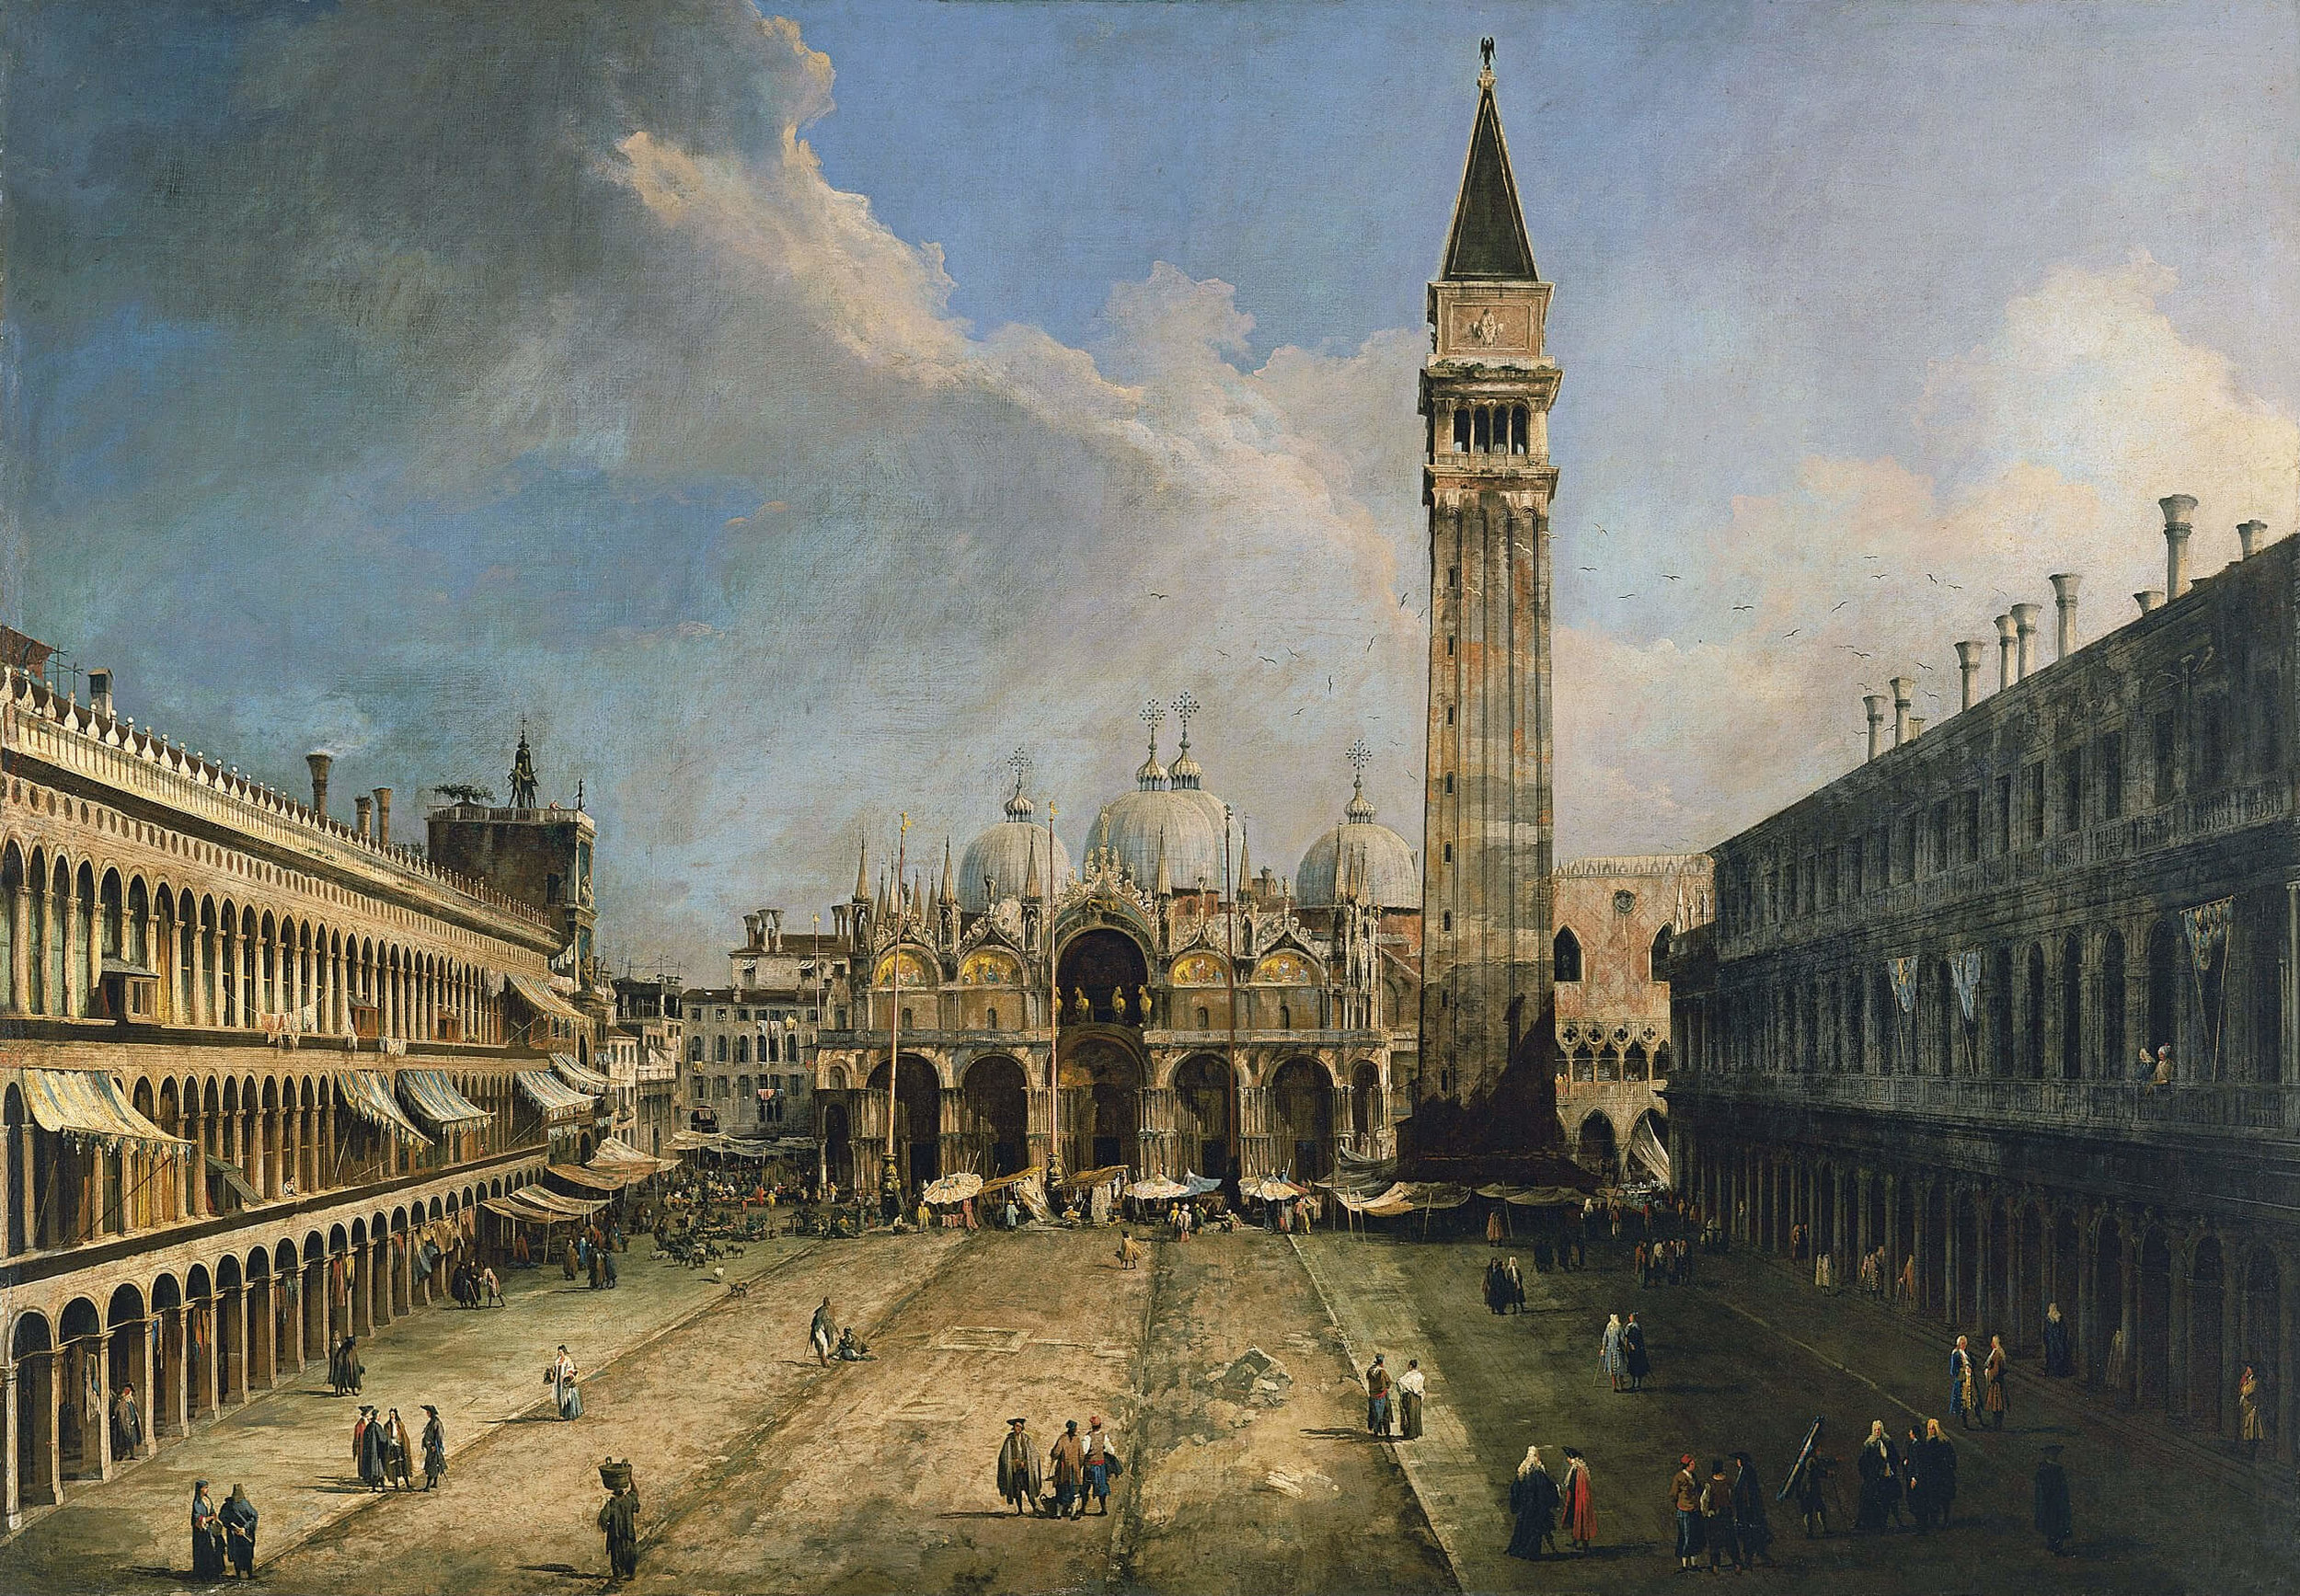   Canaletto  Piazza San Marco verso la Basilica, 1723 Image: © Museo Thyssen-Bornemisza, Madrid 